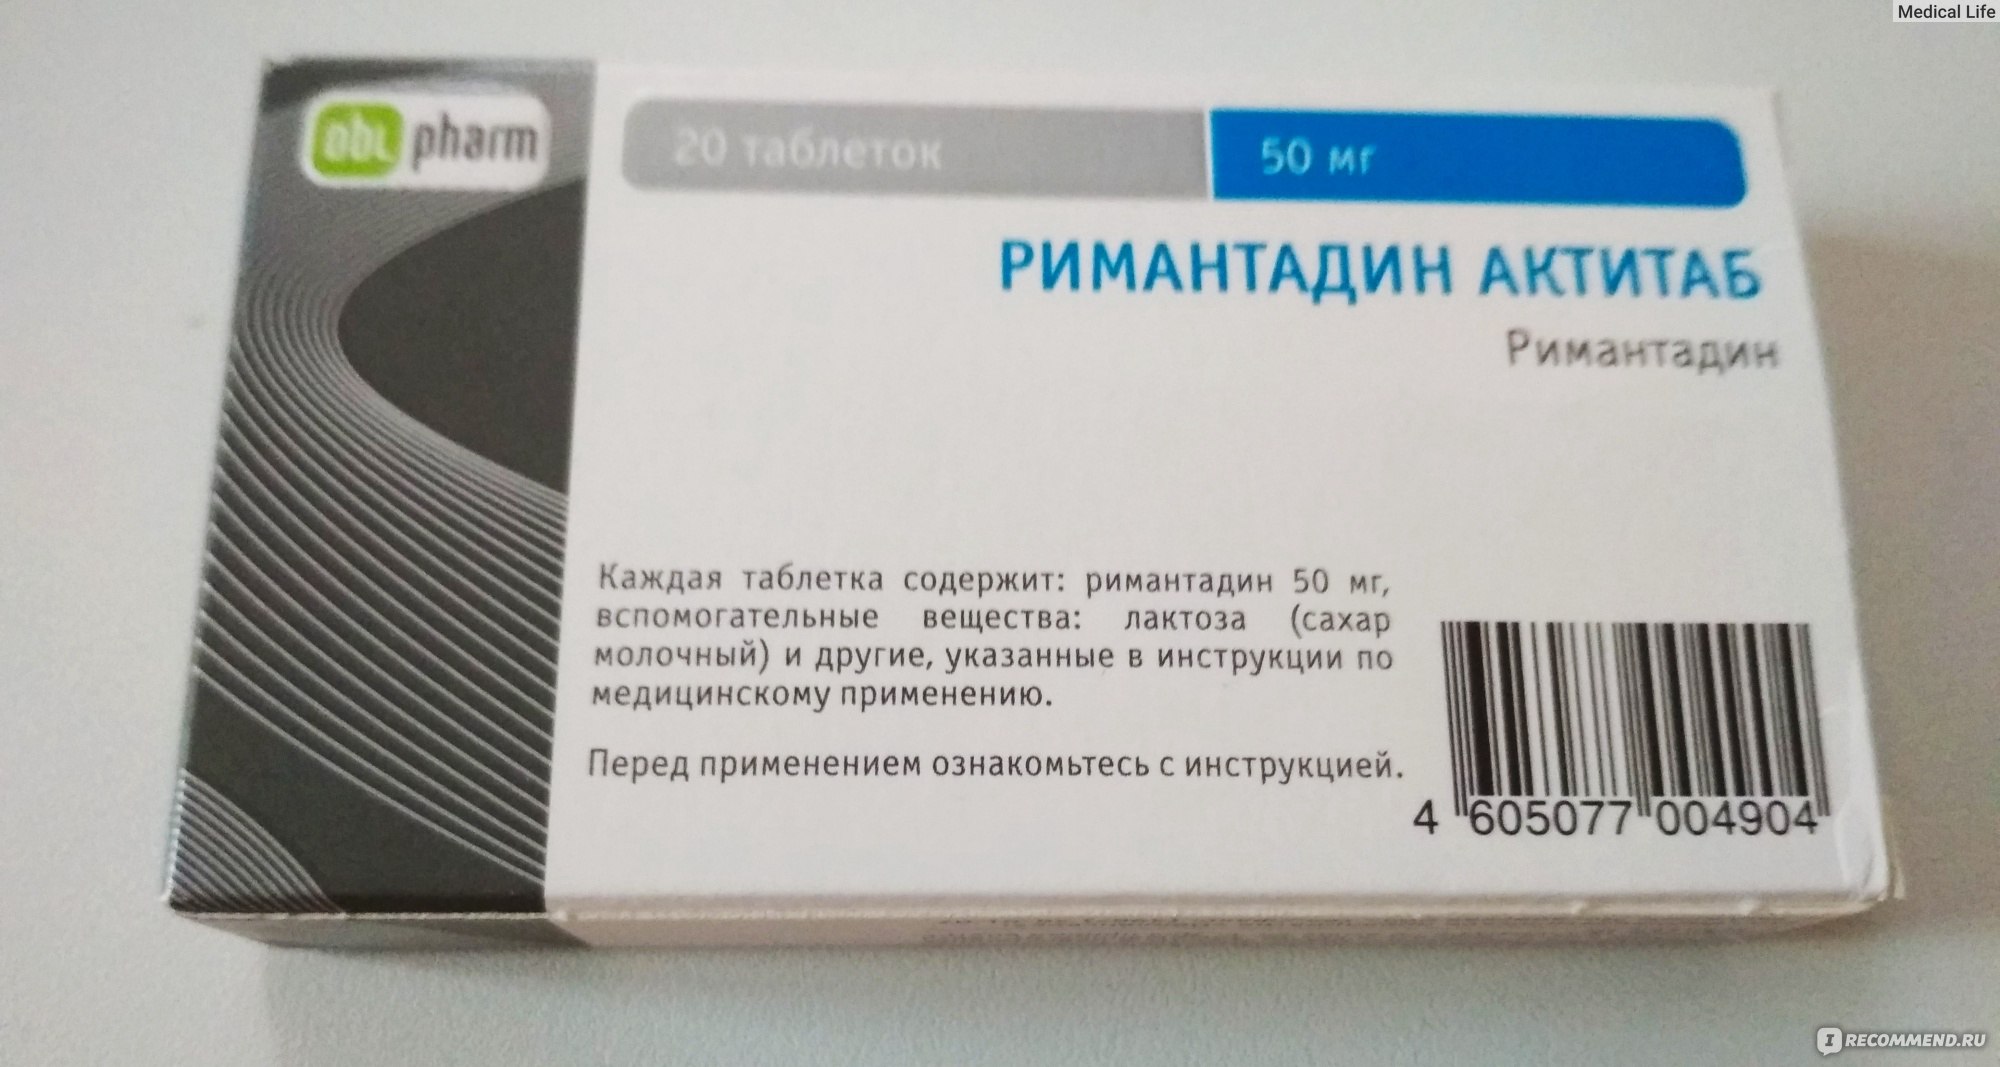 Римантадин Таблетки Стоимость В Аптеках